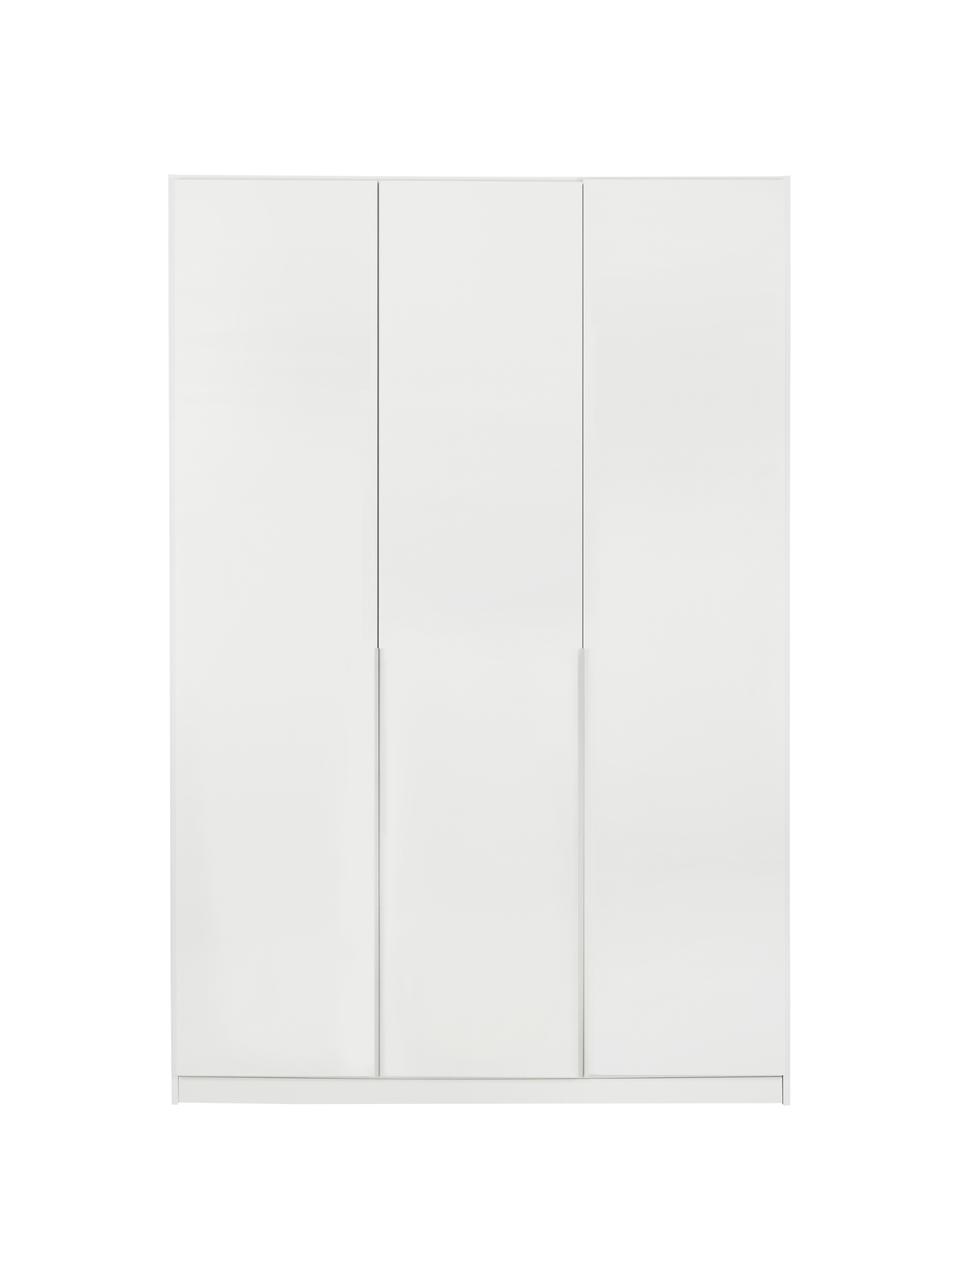 Drehtürenschrank Mia in Weiß, 3-türig, Holzwerkstoff, beschichtet, Holz, Weiß, B 136 x H 210 cm